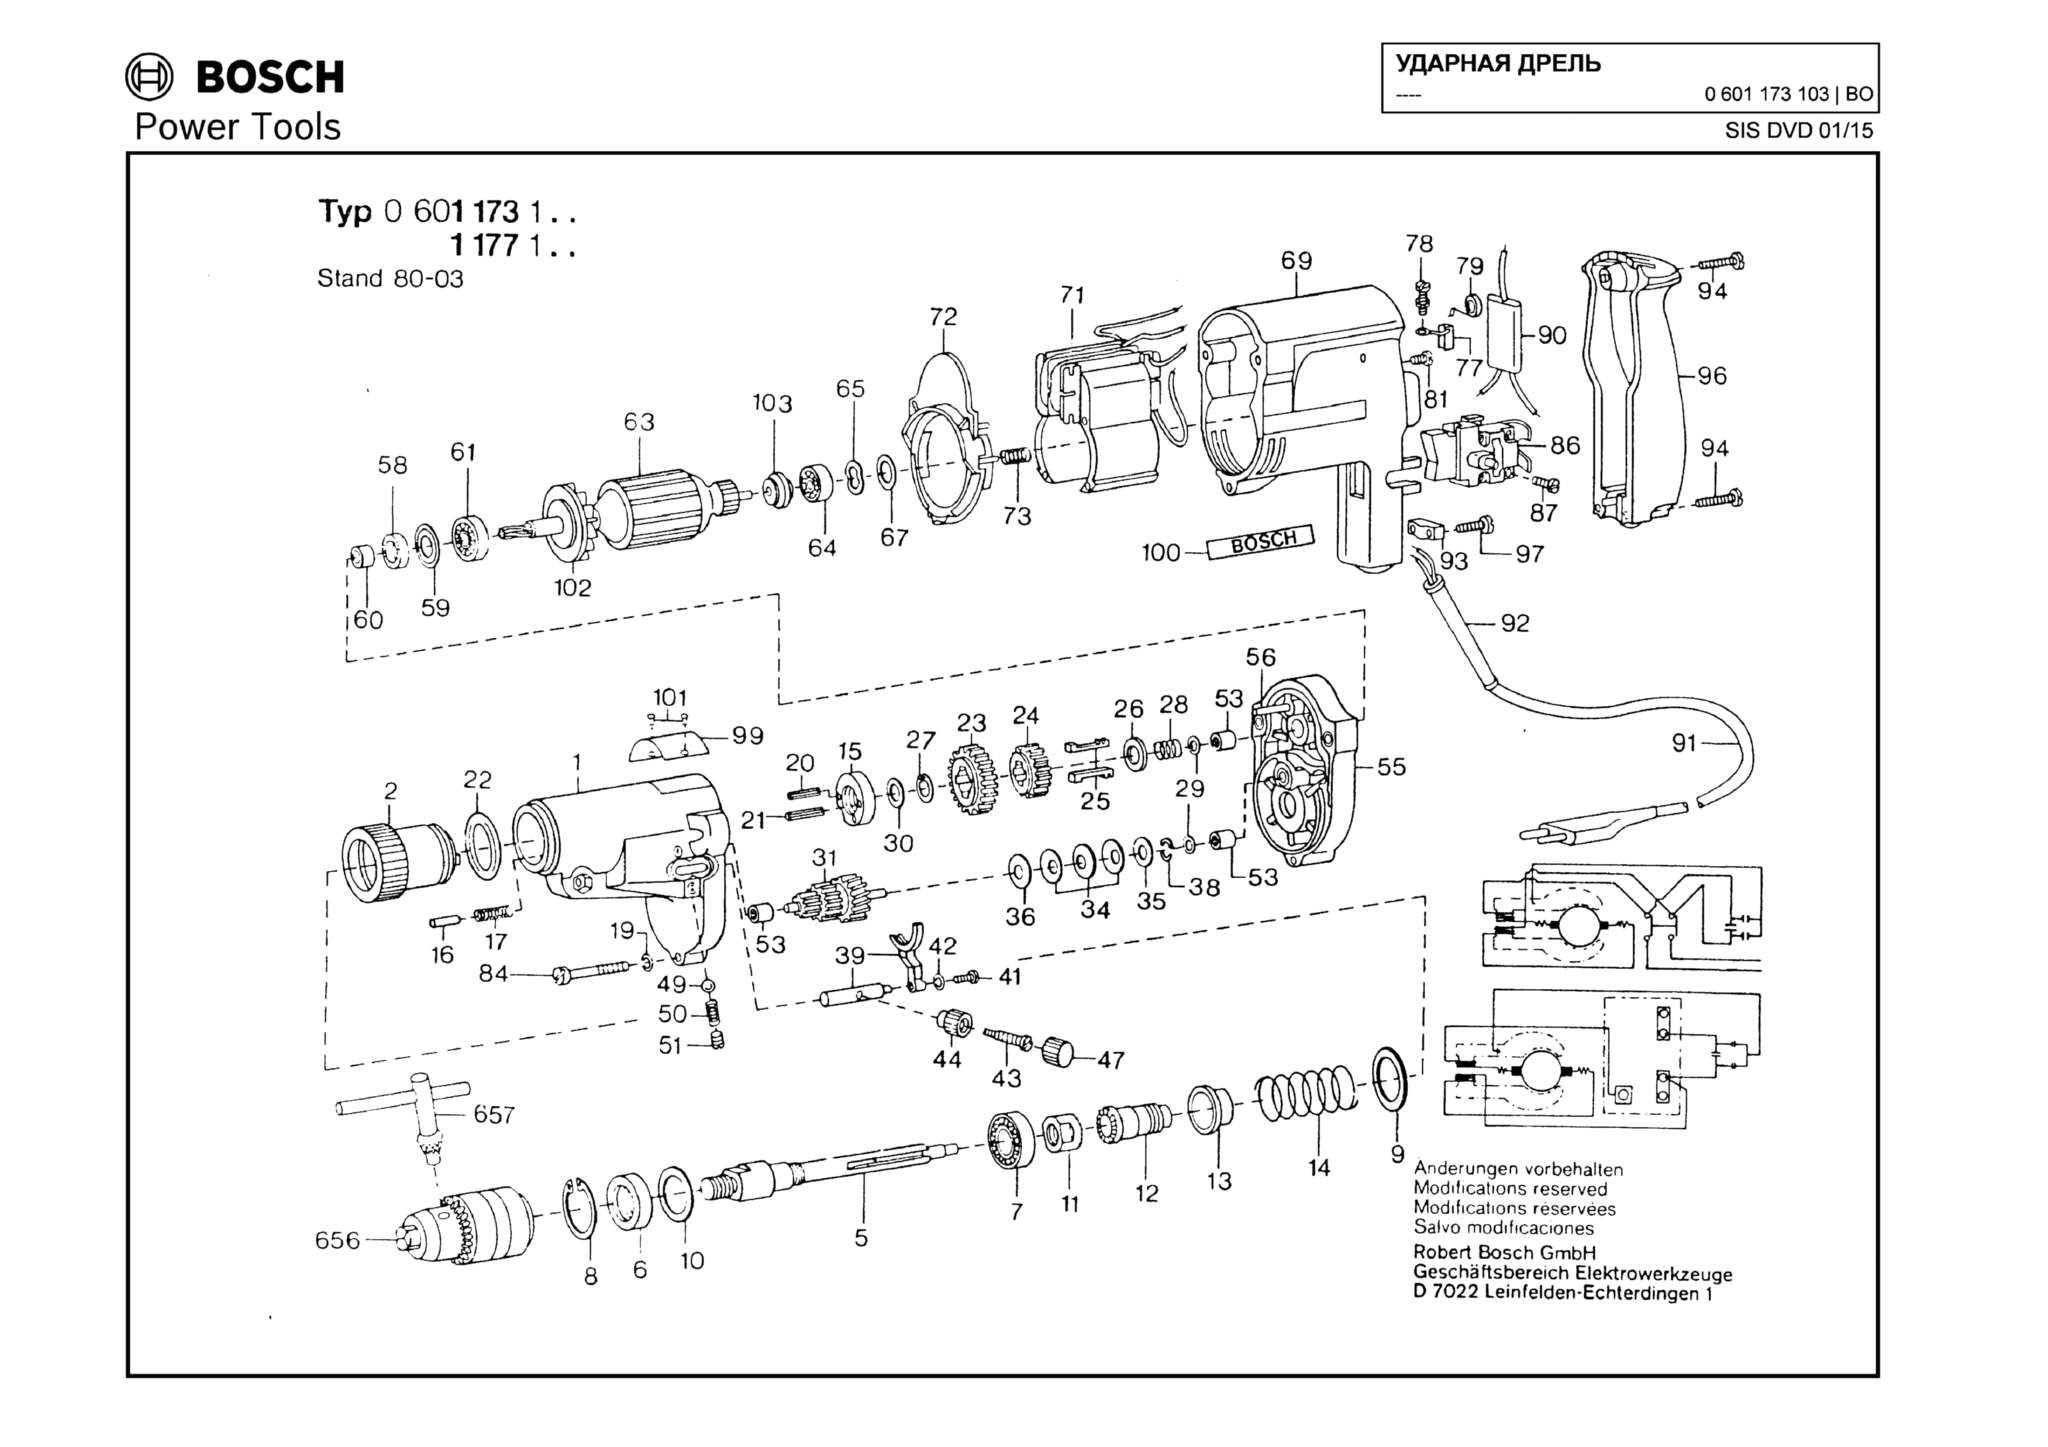 Запчасти, схема и деталировка Bosch (ТИП 0601173103)